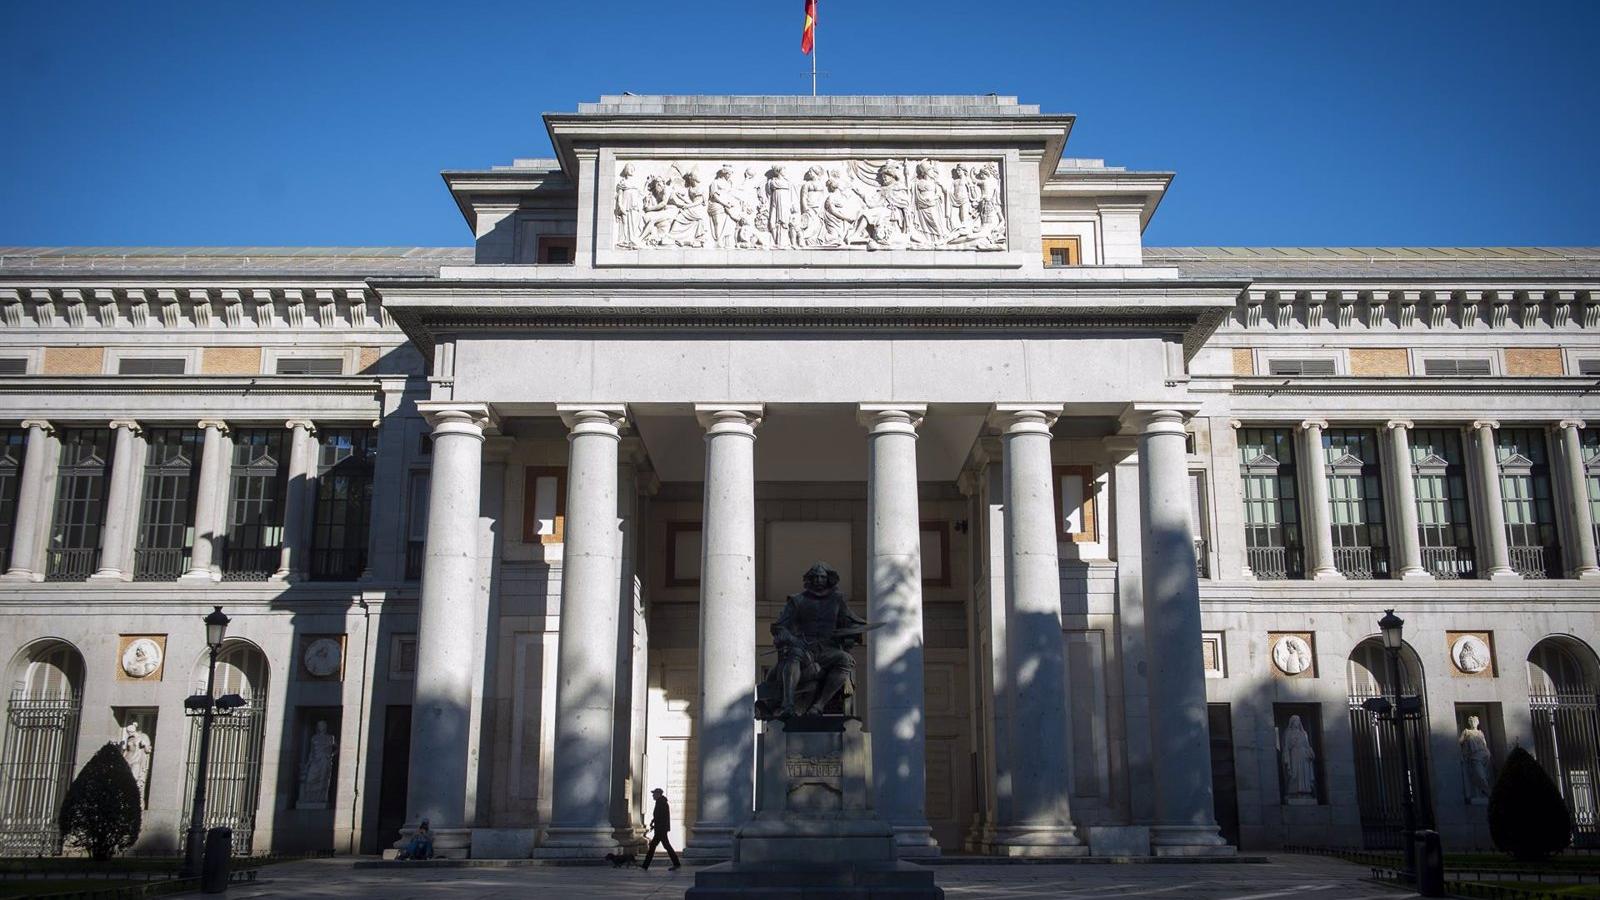 Aseguradas en 244 millones las obras de la exposición 'Guido Reni' que estará en el Prado del 28 de marzo al 9 de julio